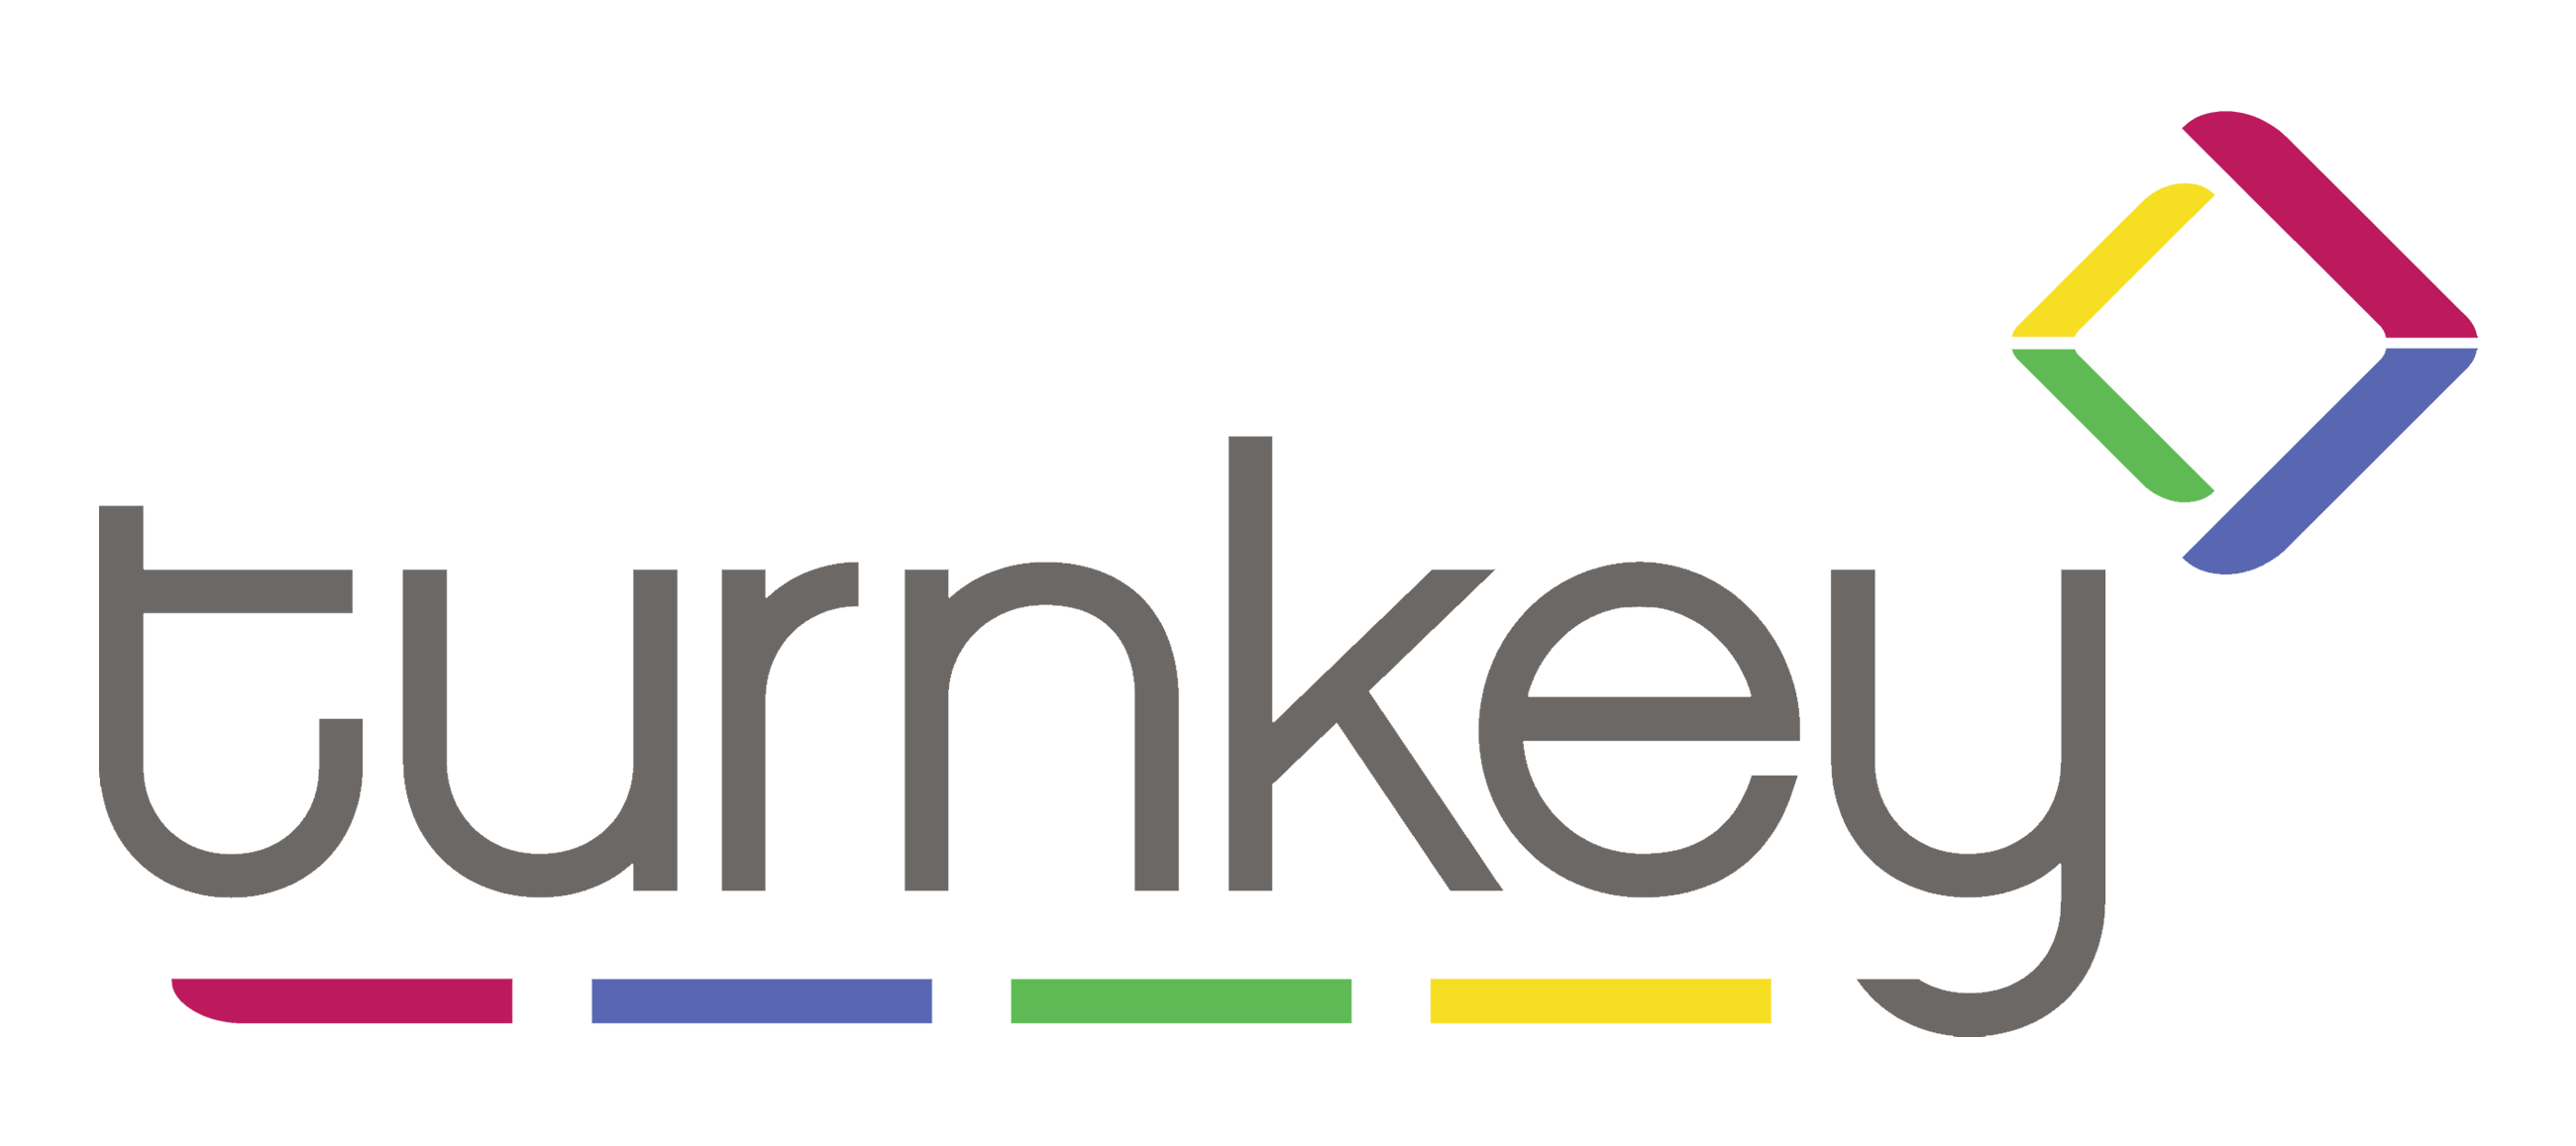 Turnkey Logo